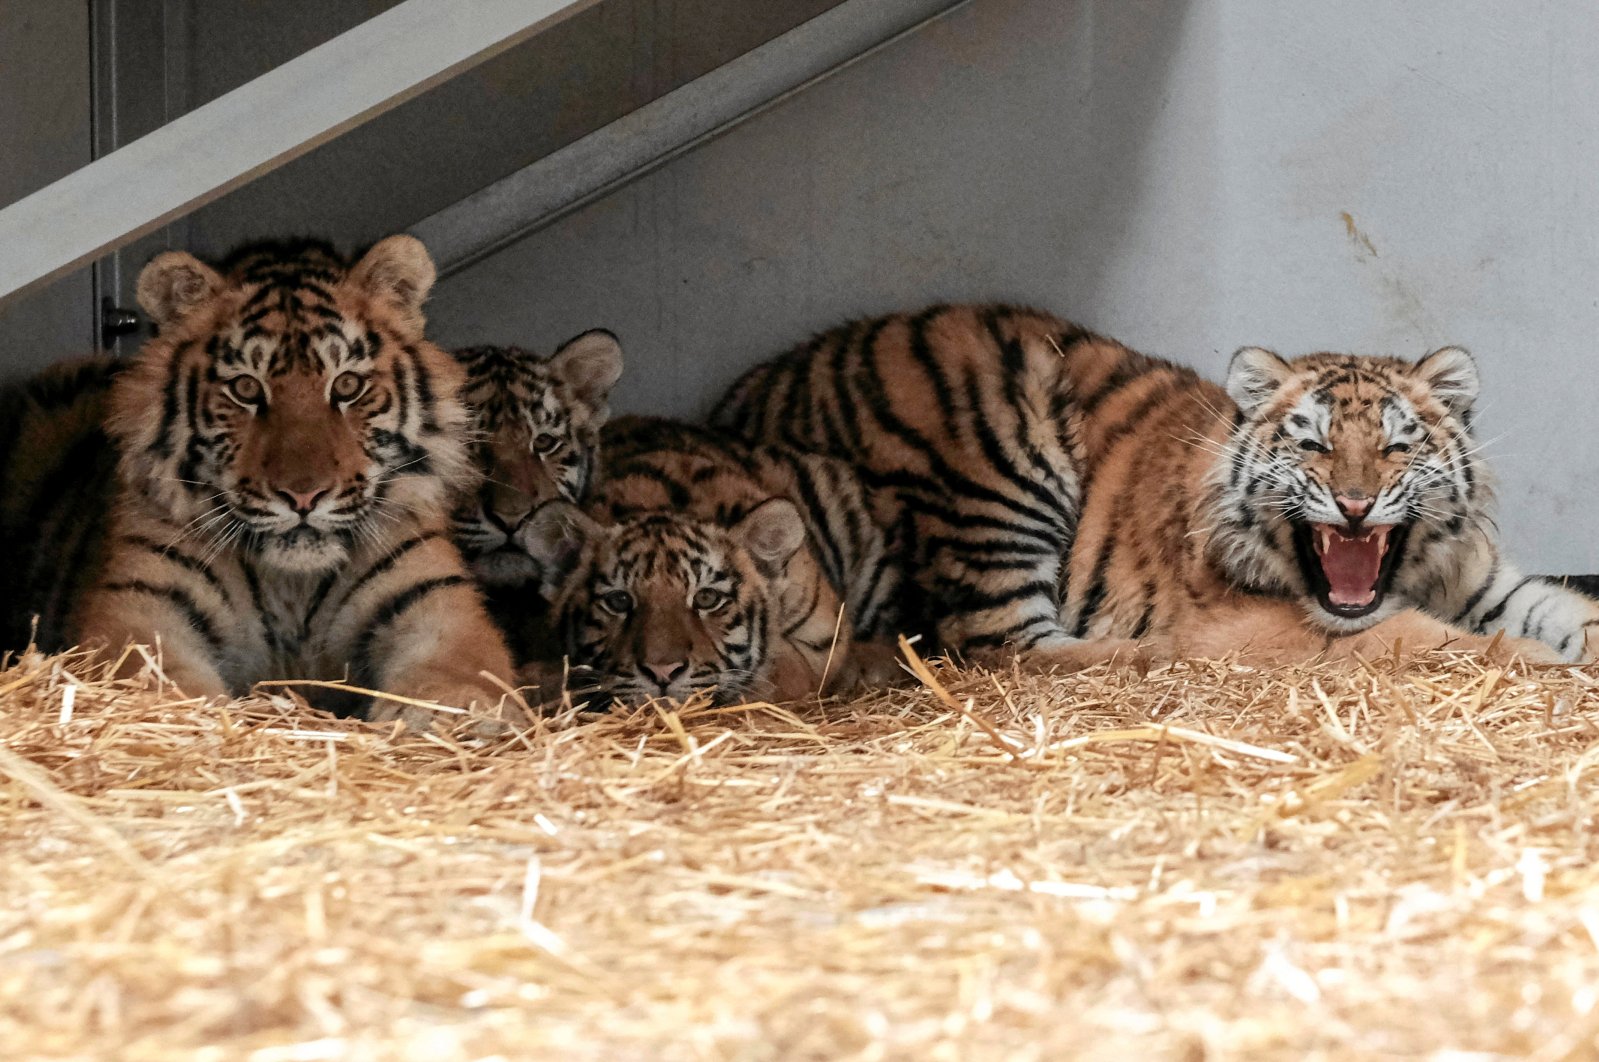 Kebun binatang Polandia menerima singa dan harimau yang diusir dari Ukraina